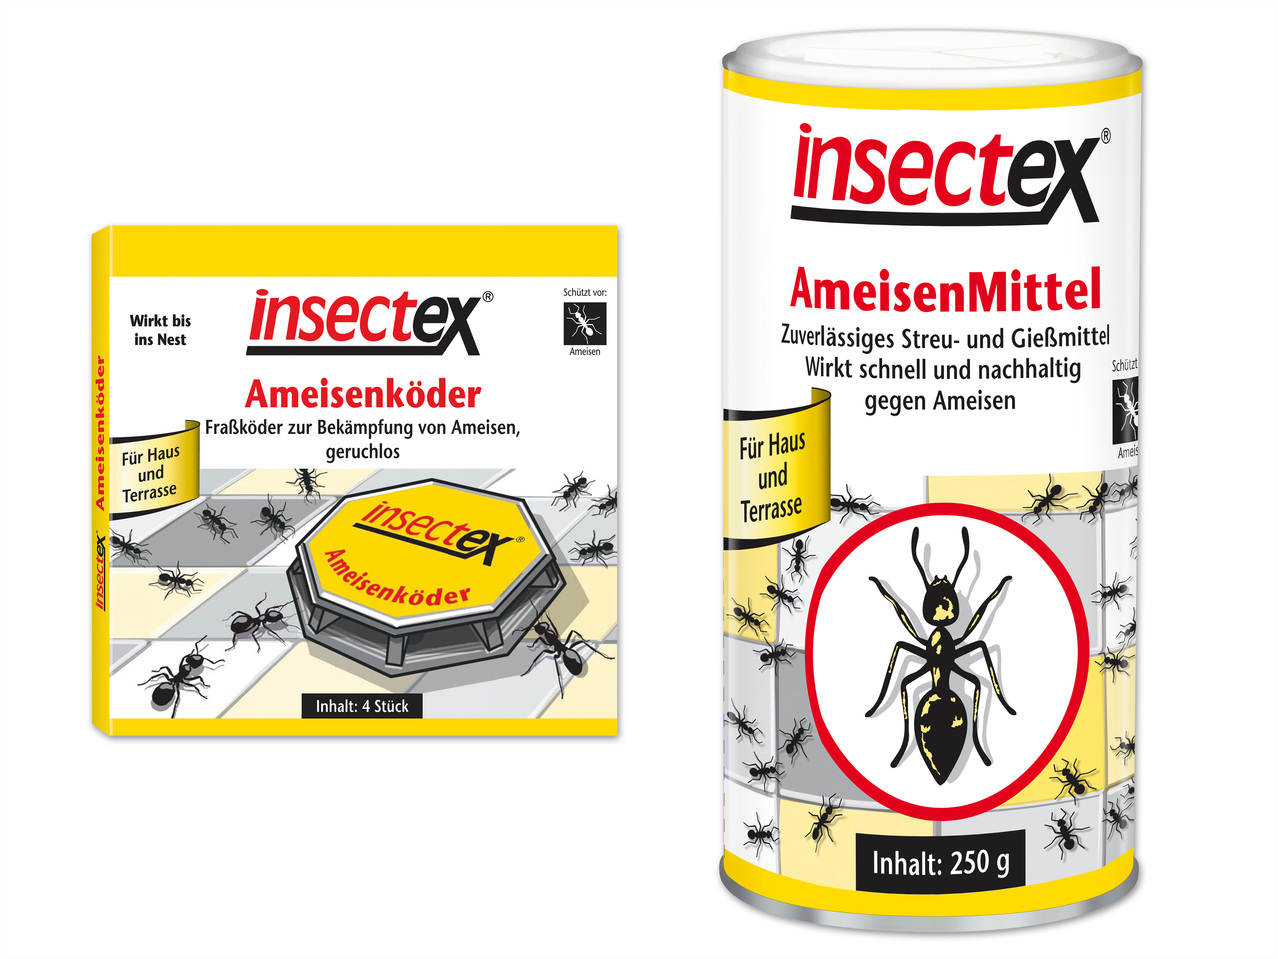 INSECTEX Ameisenköderdose, 4 Stück oder Streu- und Gießmittel